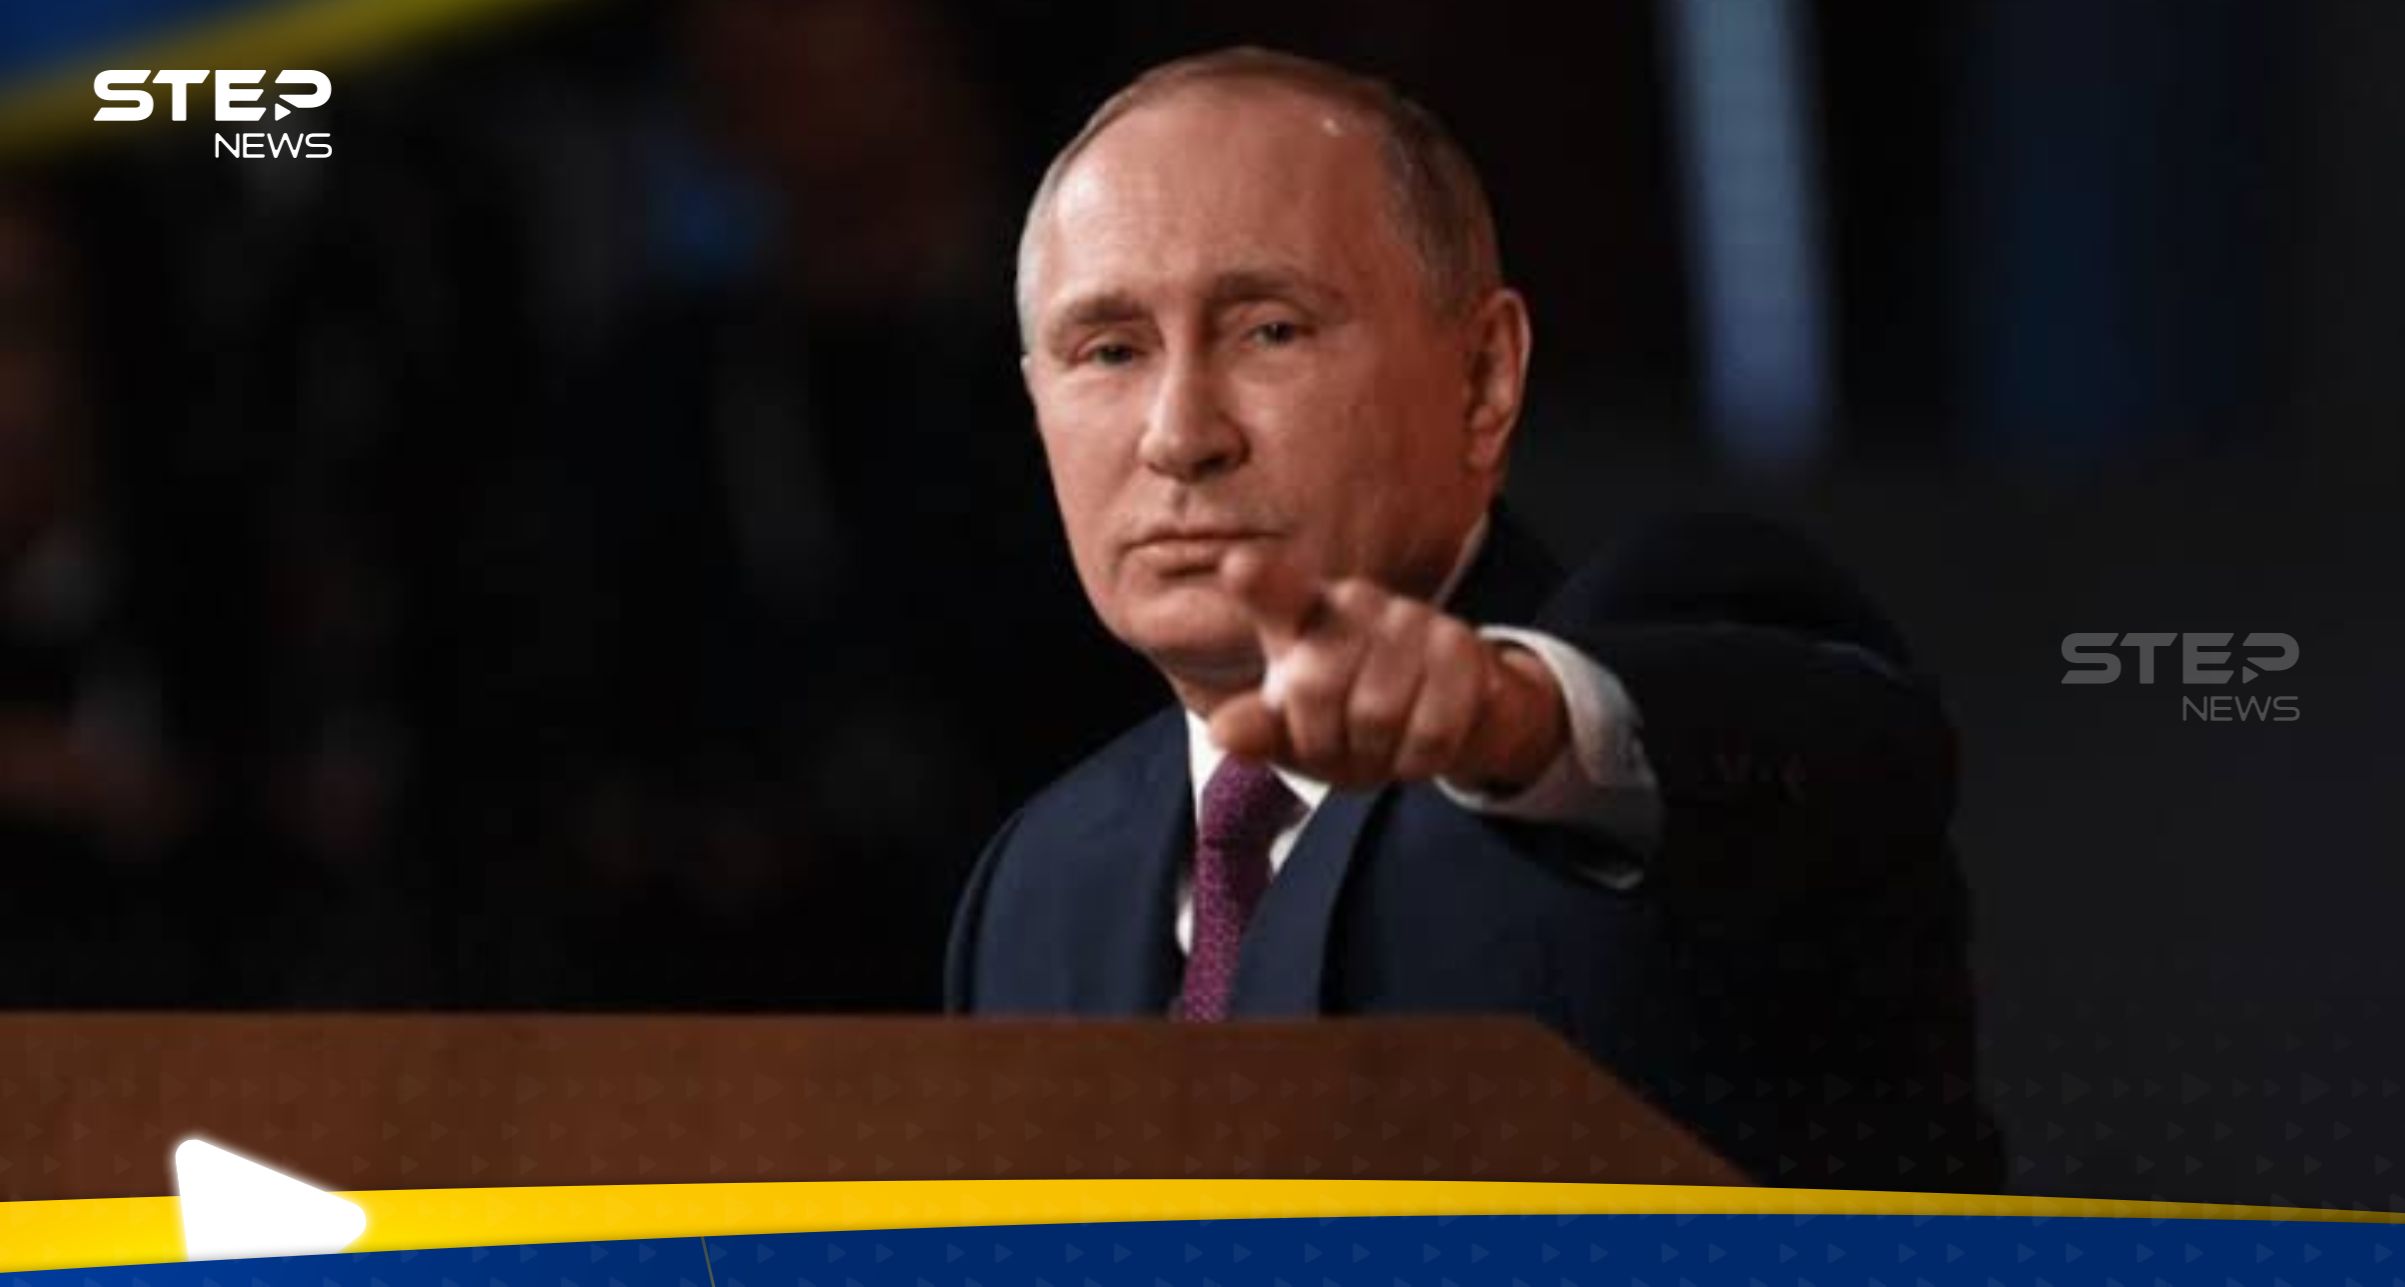 لماذا يزور بوتين كالينينغراد في قلب أوروبا؟